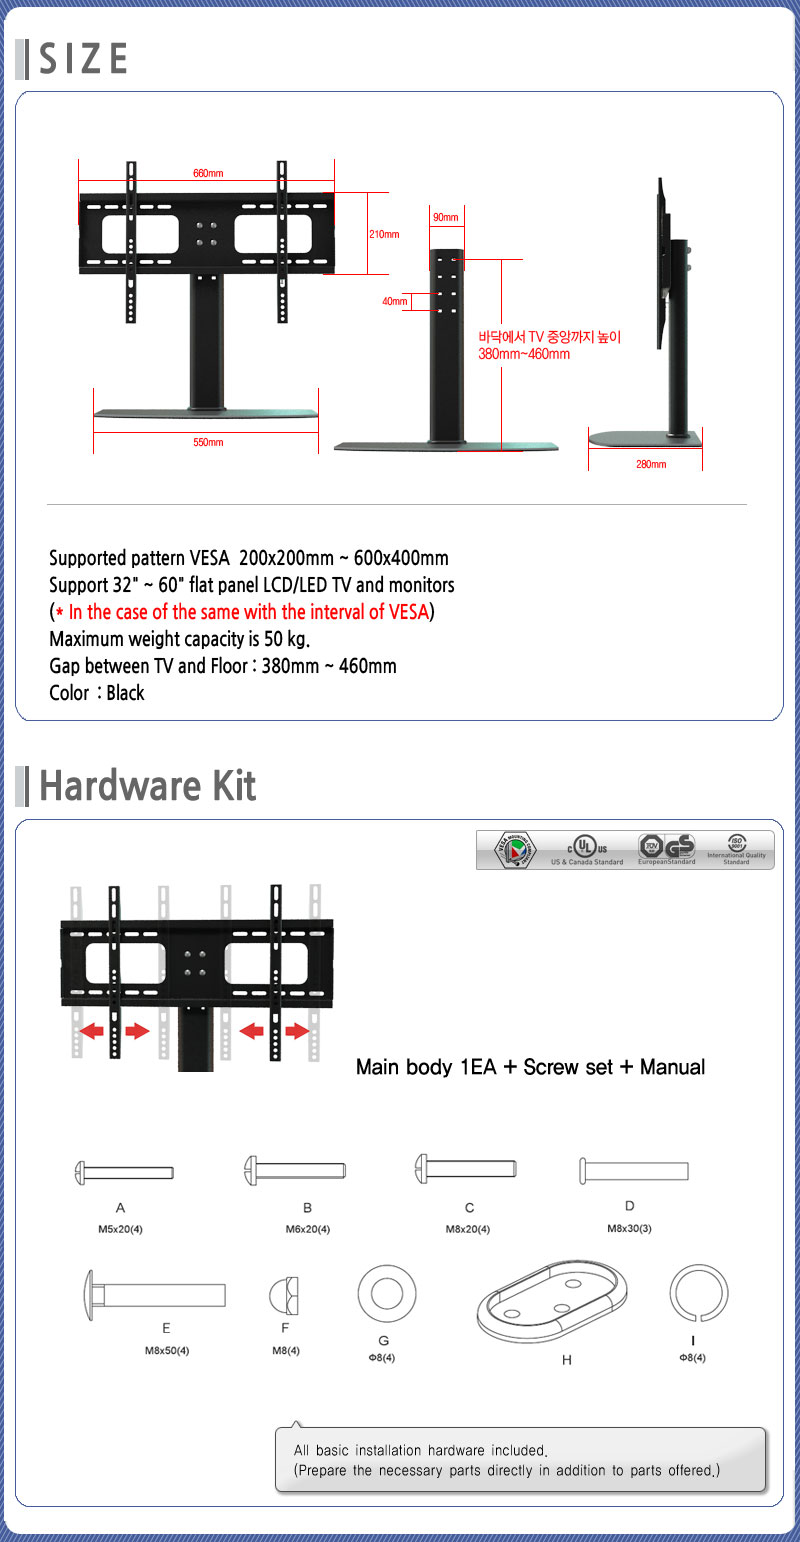 TV base stand AVRTV05 hardware kit